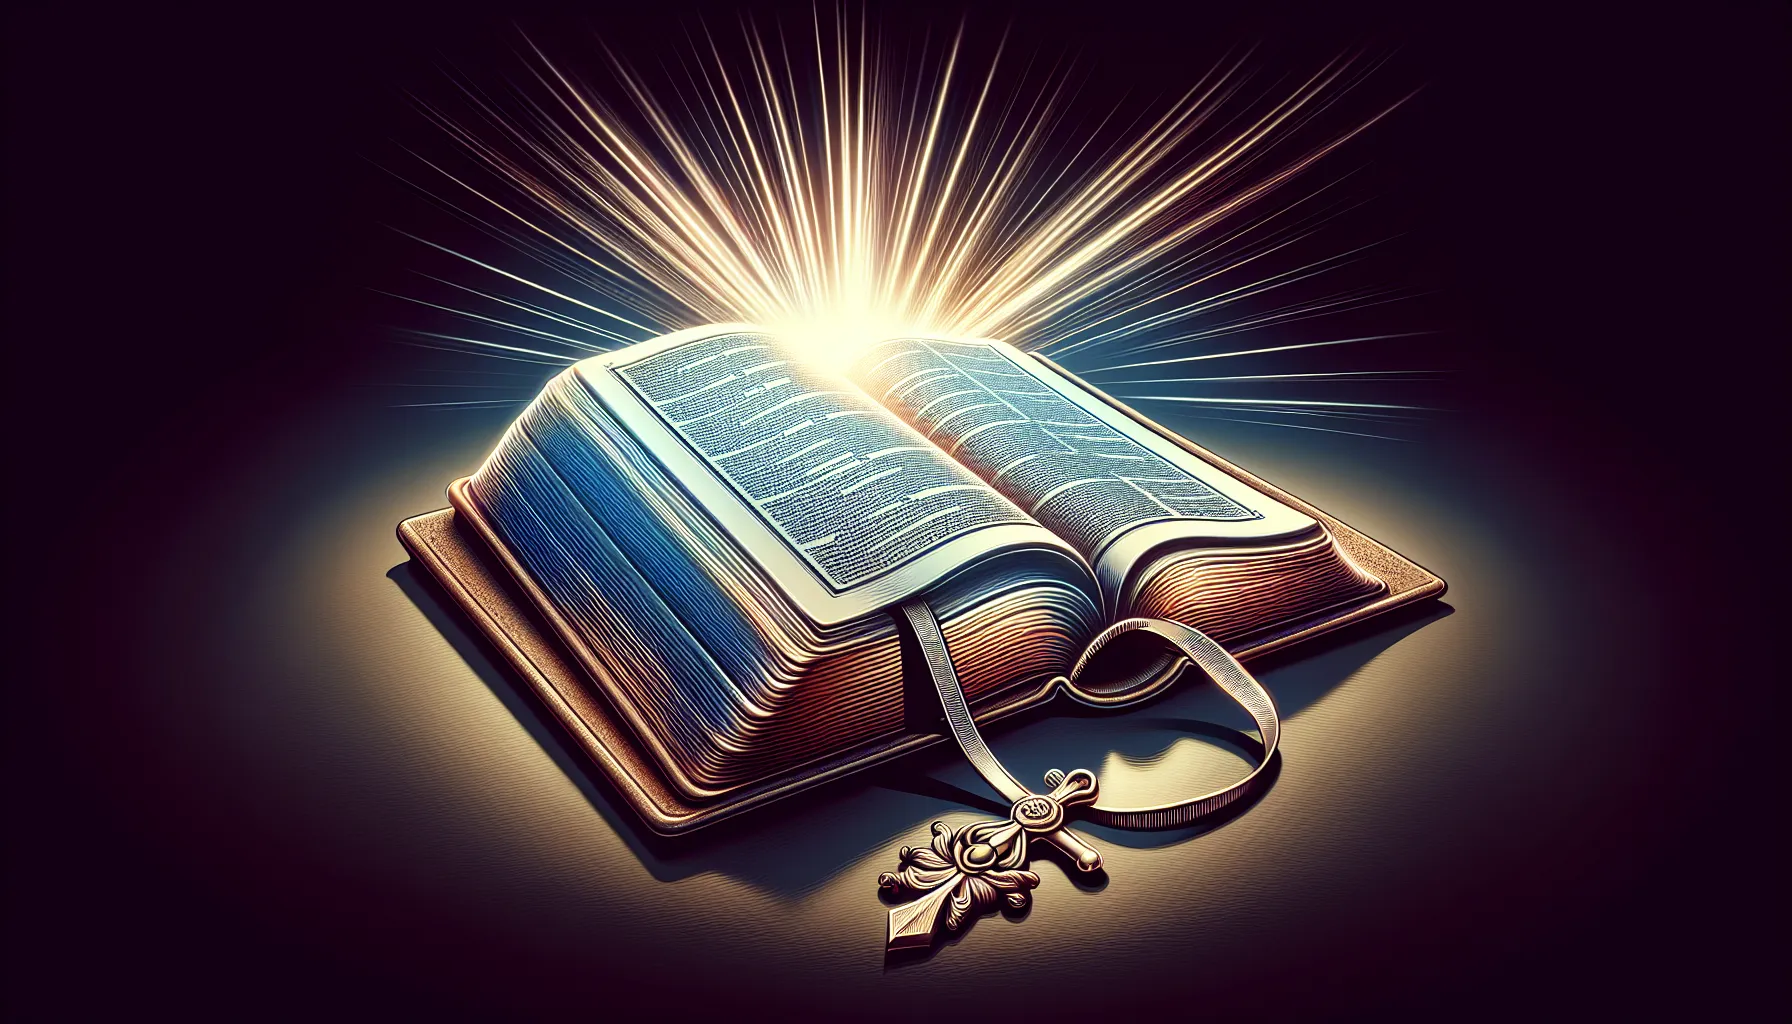 Imagen ilustrativa de la Biblia abierta con rayos de luz resplandeciendo